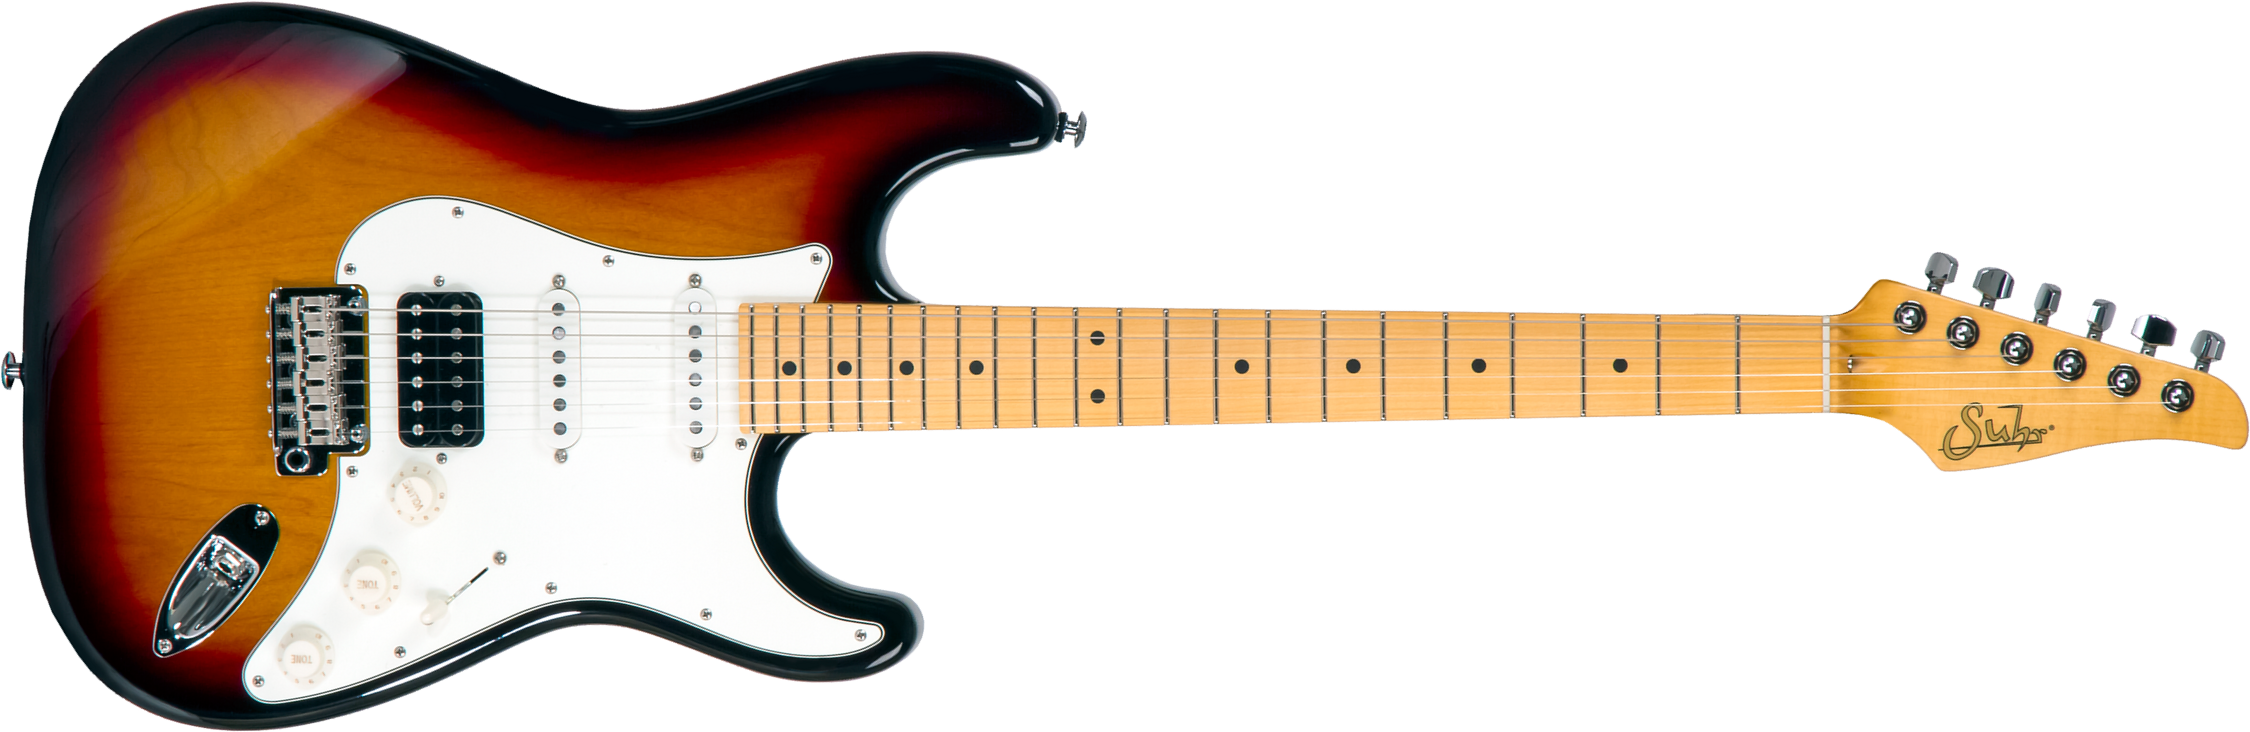 Suhr Classic S 01-cls-0003 Hss Trem Mn #70325 - 3 Tone Burst - Elektrische gitaar in Str-vorm - Main picture